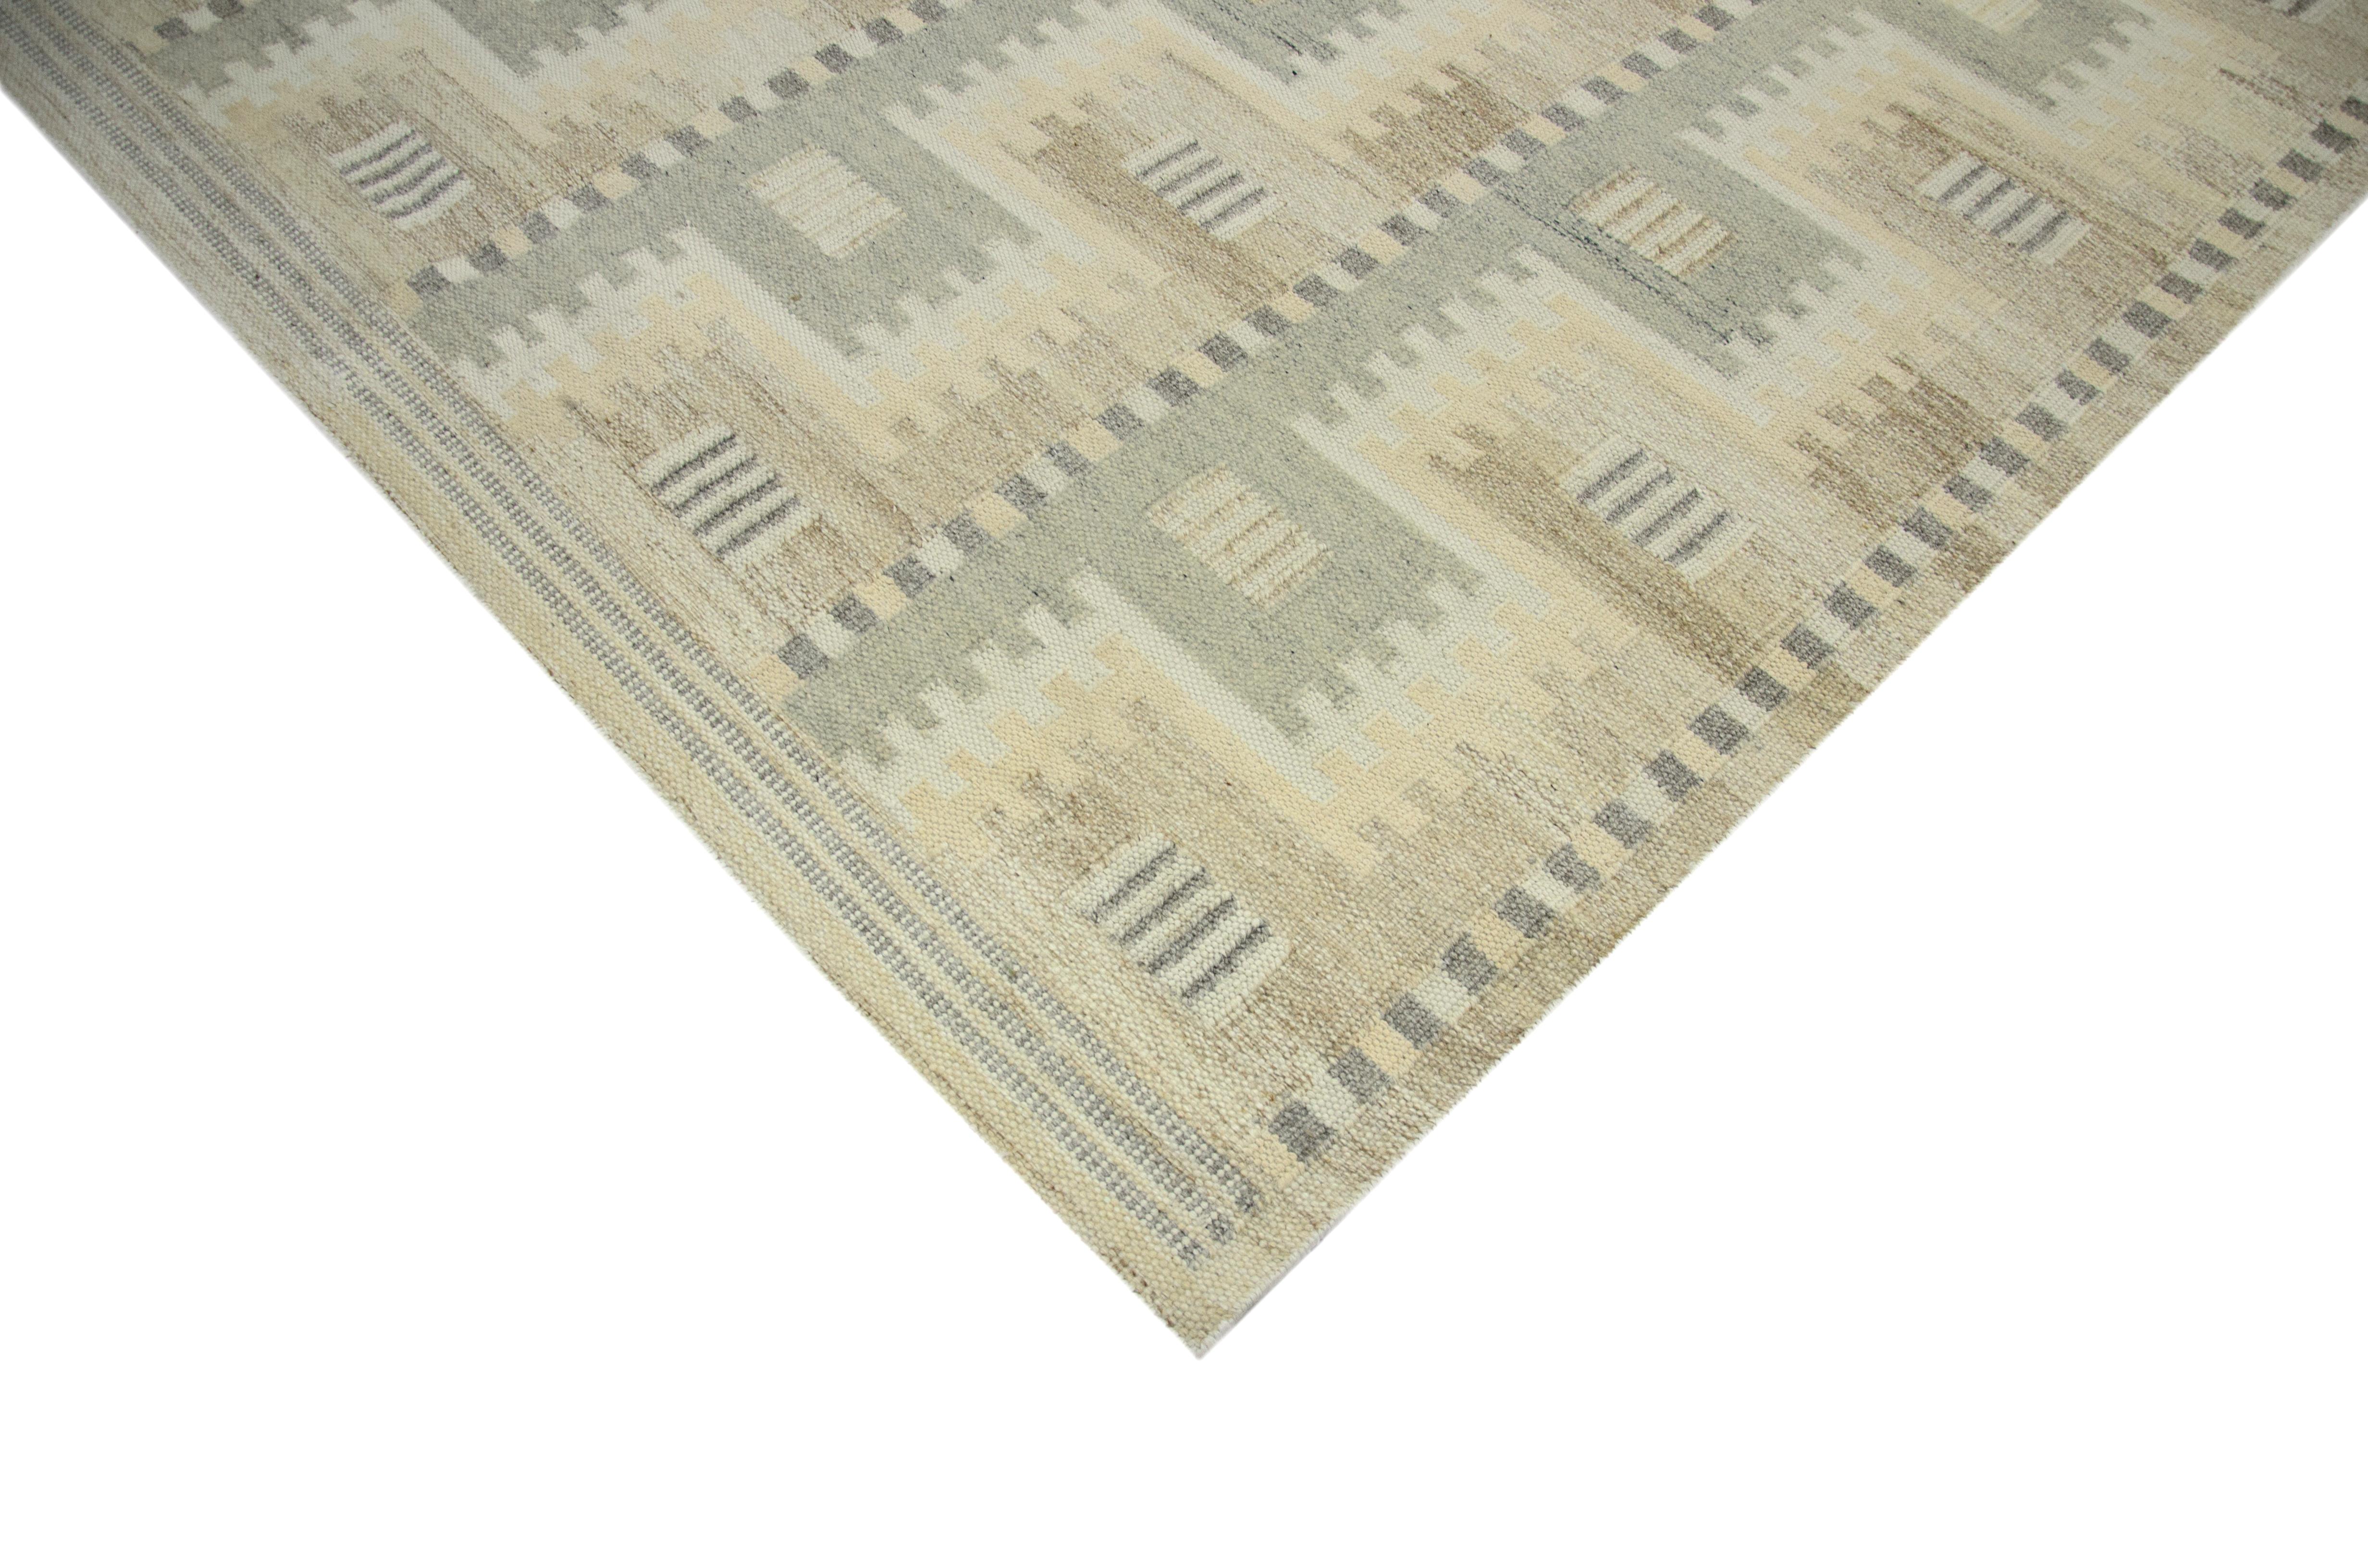 Ce tapis moderne est tissé à la main dans un design Scandinavian à l'aide de laine fine et de teintures organiques. Il présente un champ ivoire exquis avec des motifs géométriques gris et bruns. Cette pièce sera certainement fabuleuse dans les